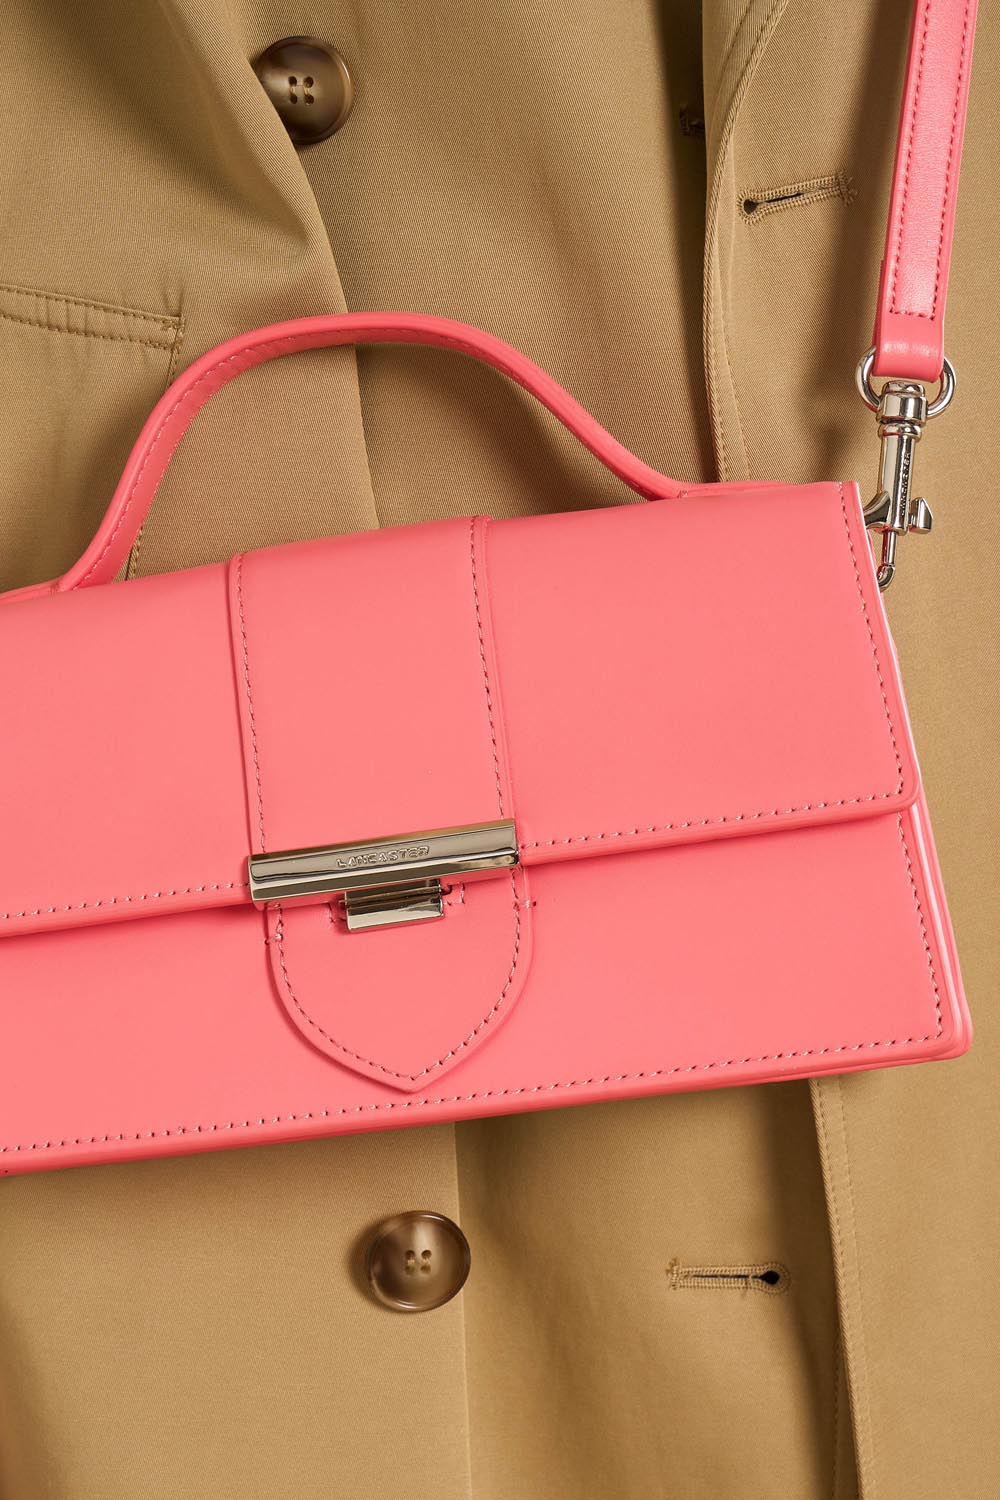 sac baguette - paris ily #couleur_rose-bonbon